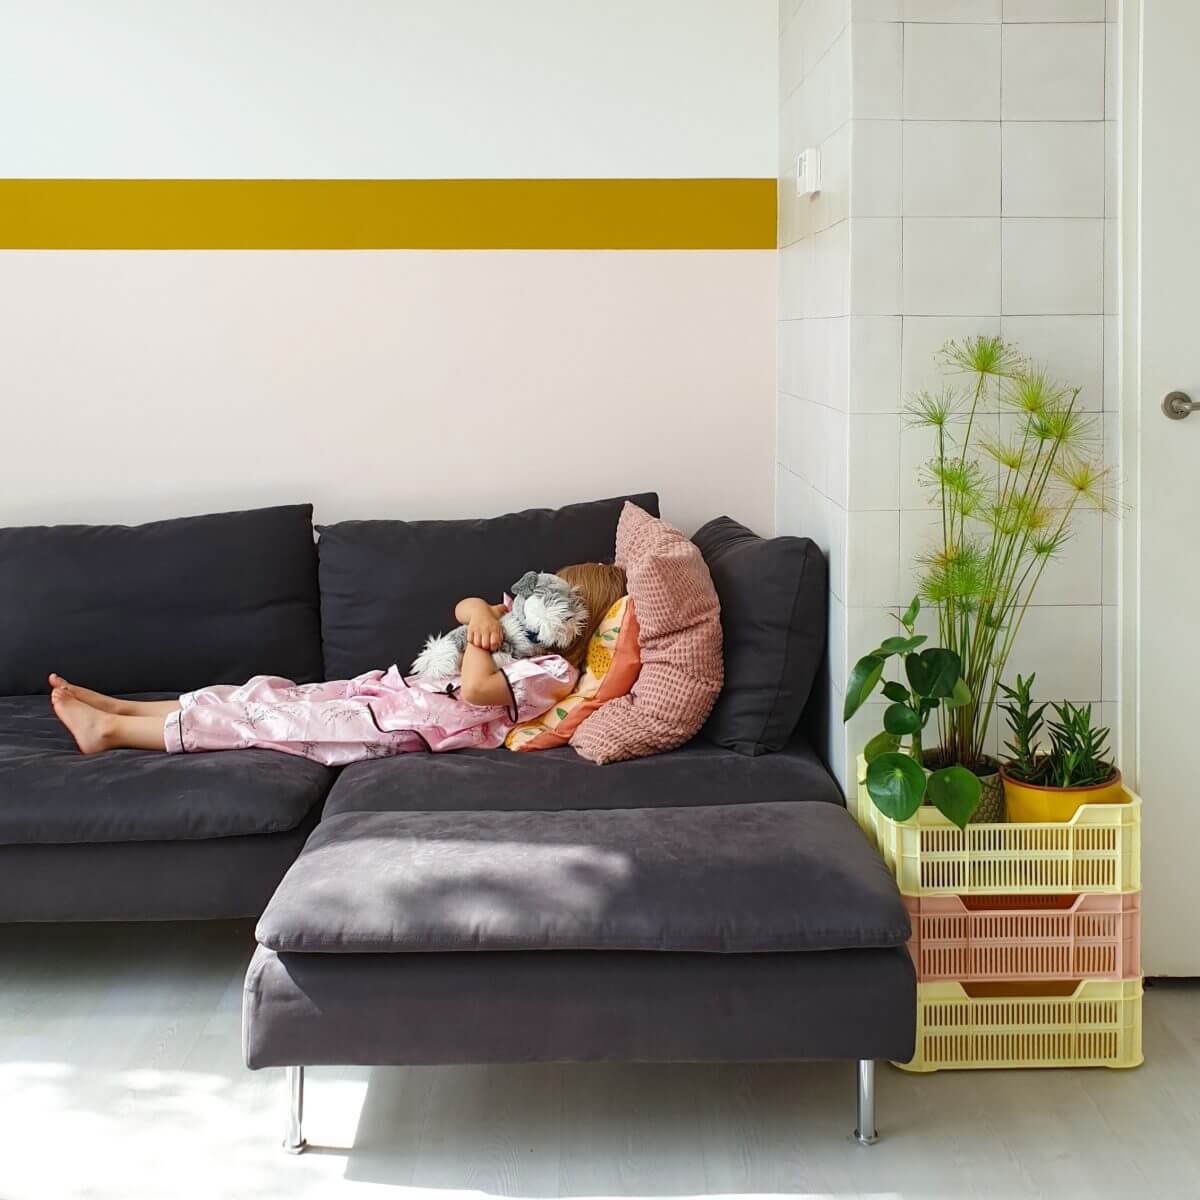 Onze nieuwe woonkamer in roze en geel van Flexa Creations